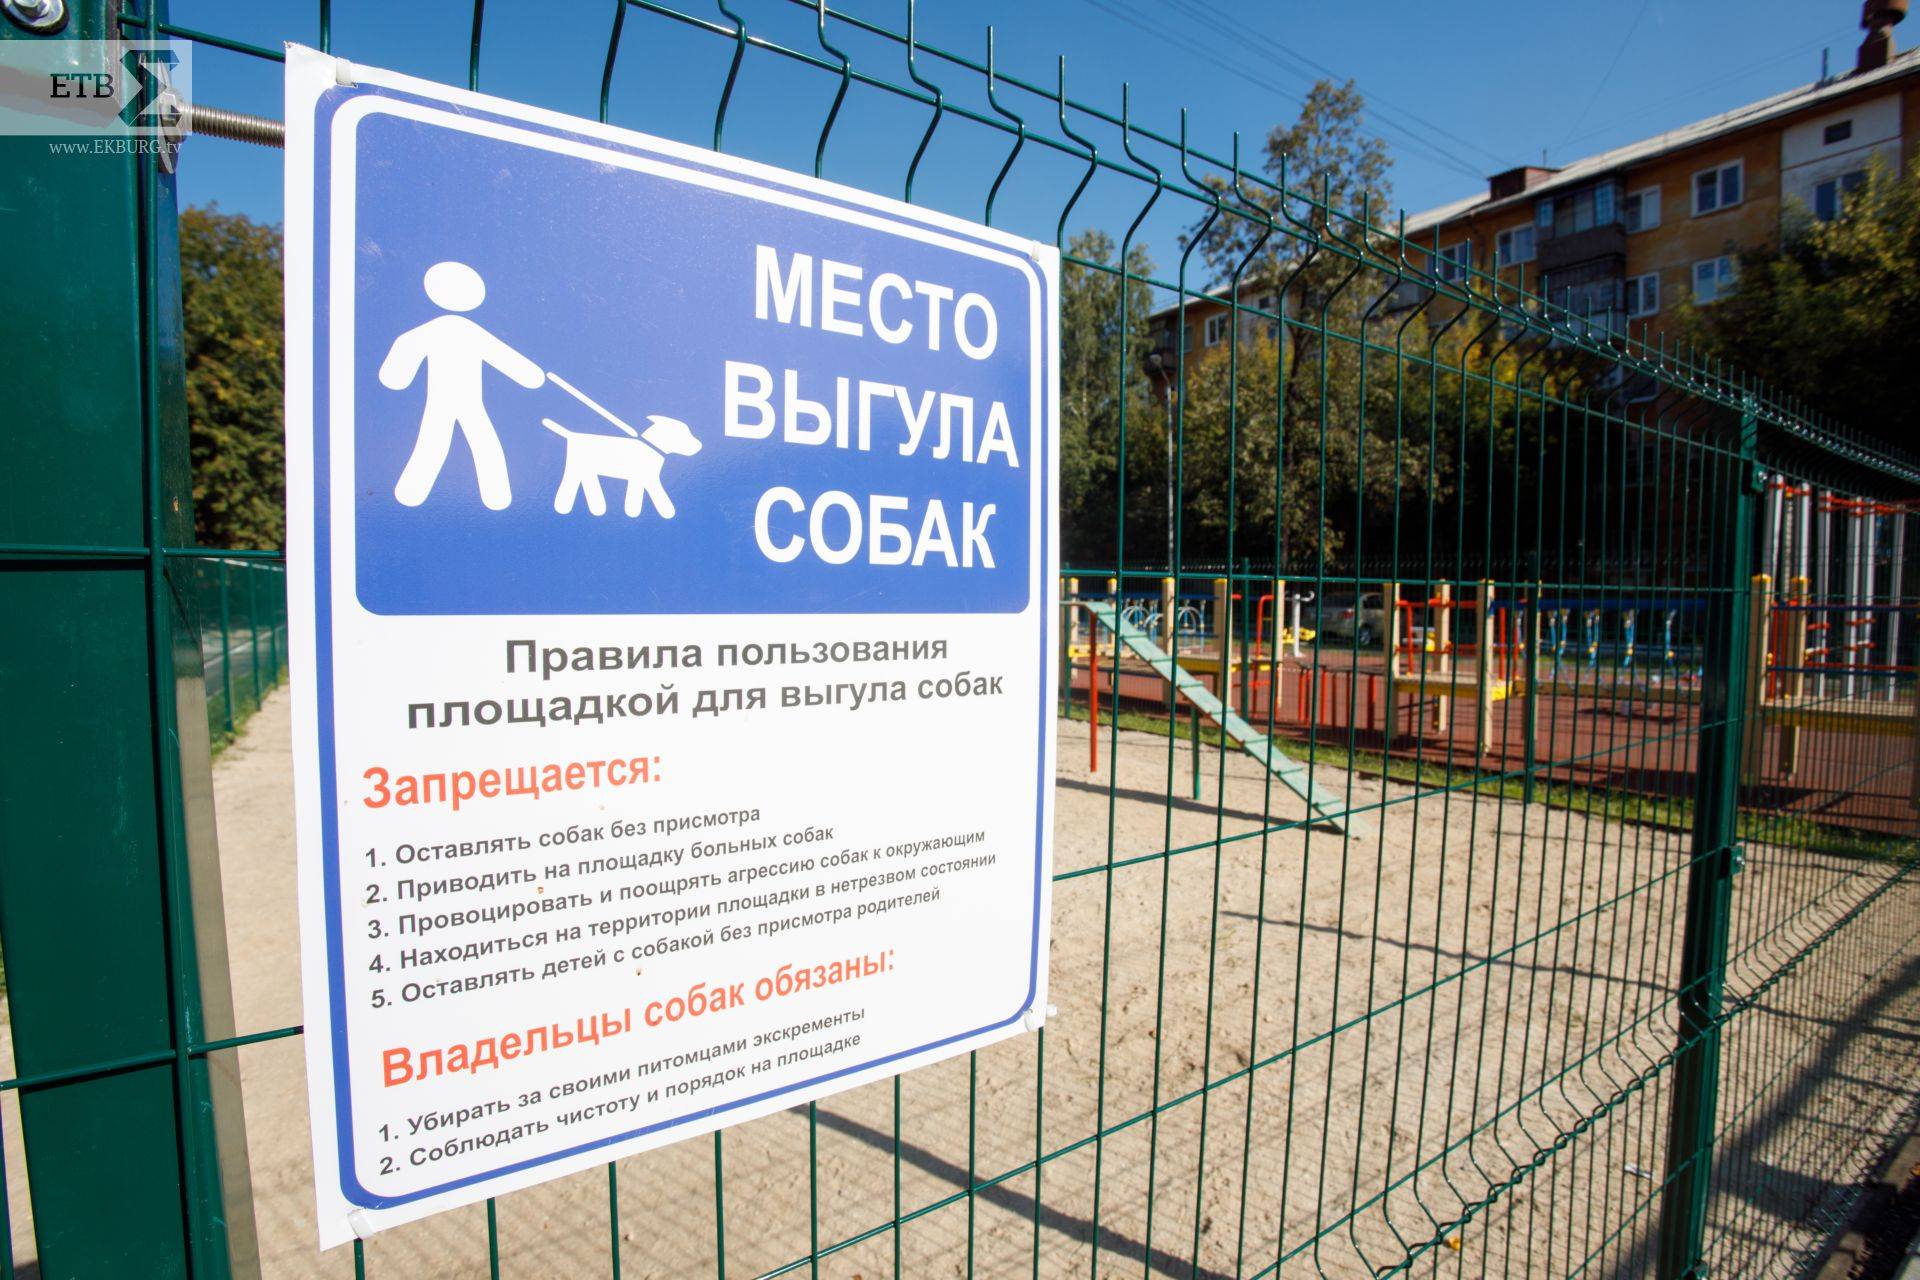 Правила выгула собак: закон в 2021 году, штраф, запрещенные места, можно ли гулять без намордника и поводка в городе